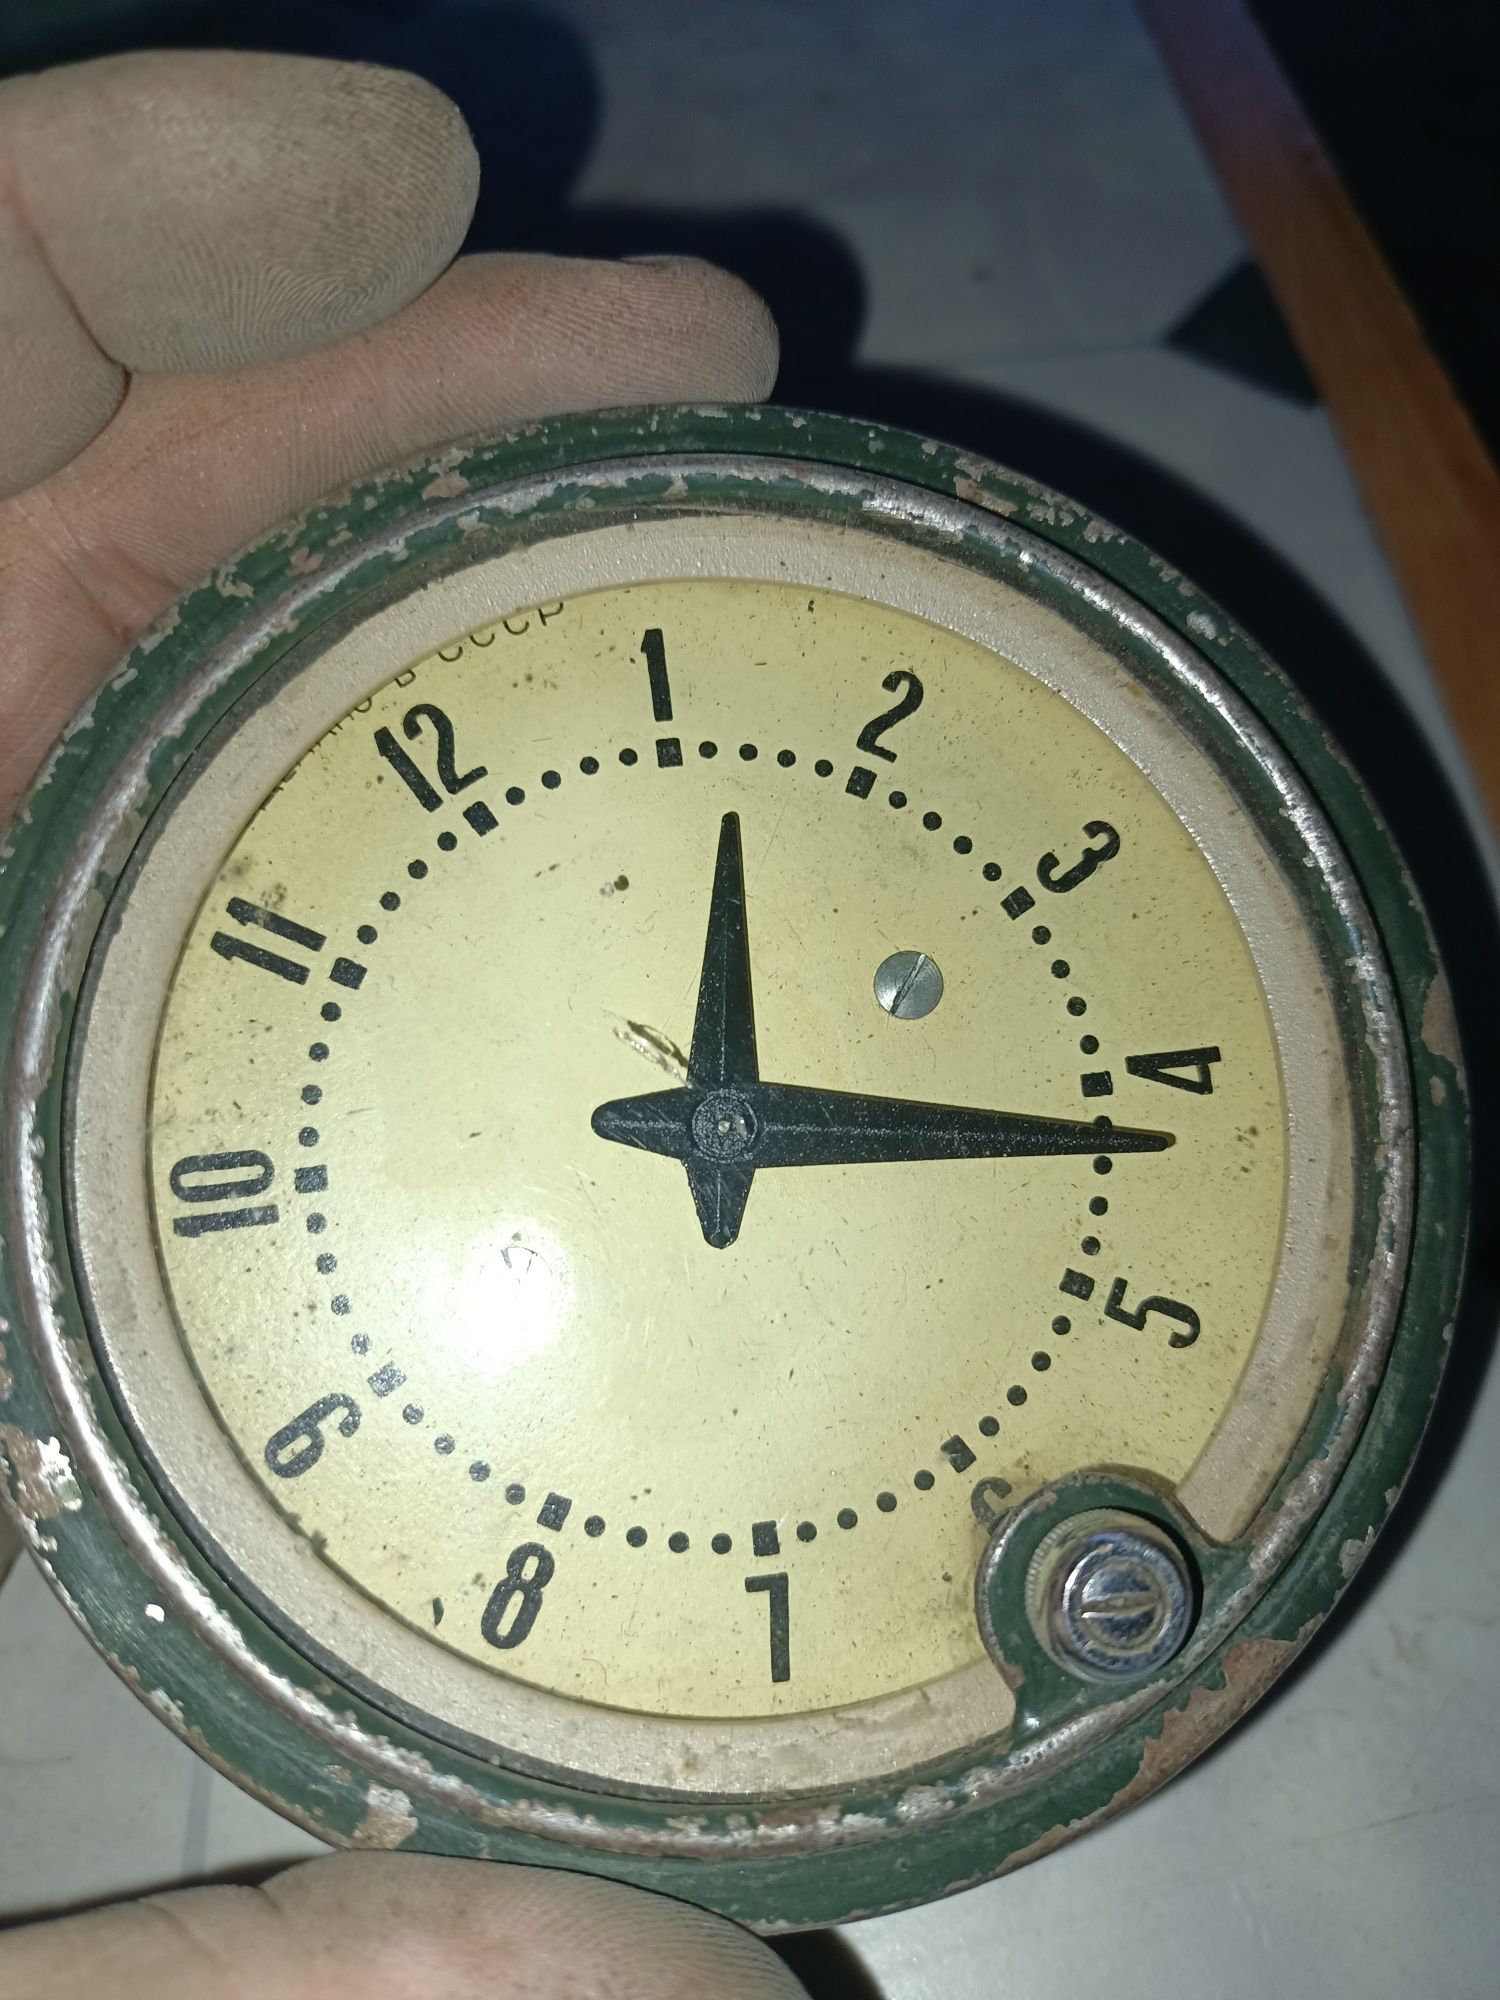 Автомобильные часы ретро , времени СССР - 1968 года выпуска , раритет.